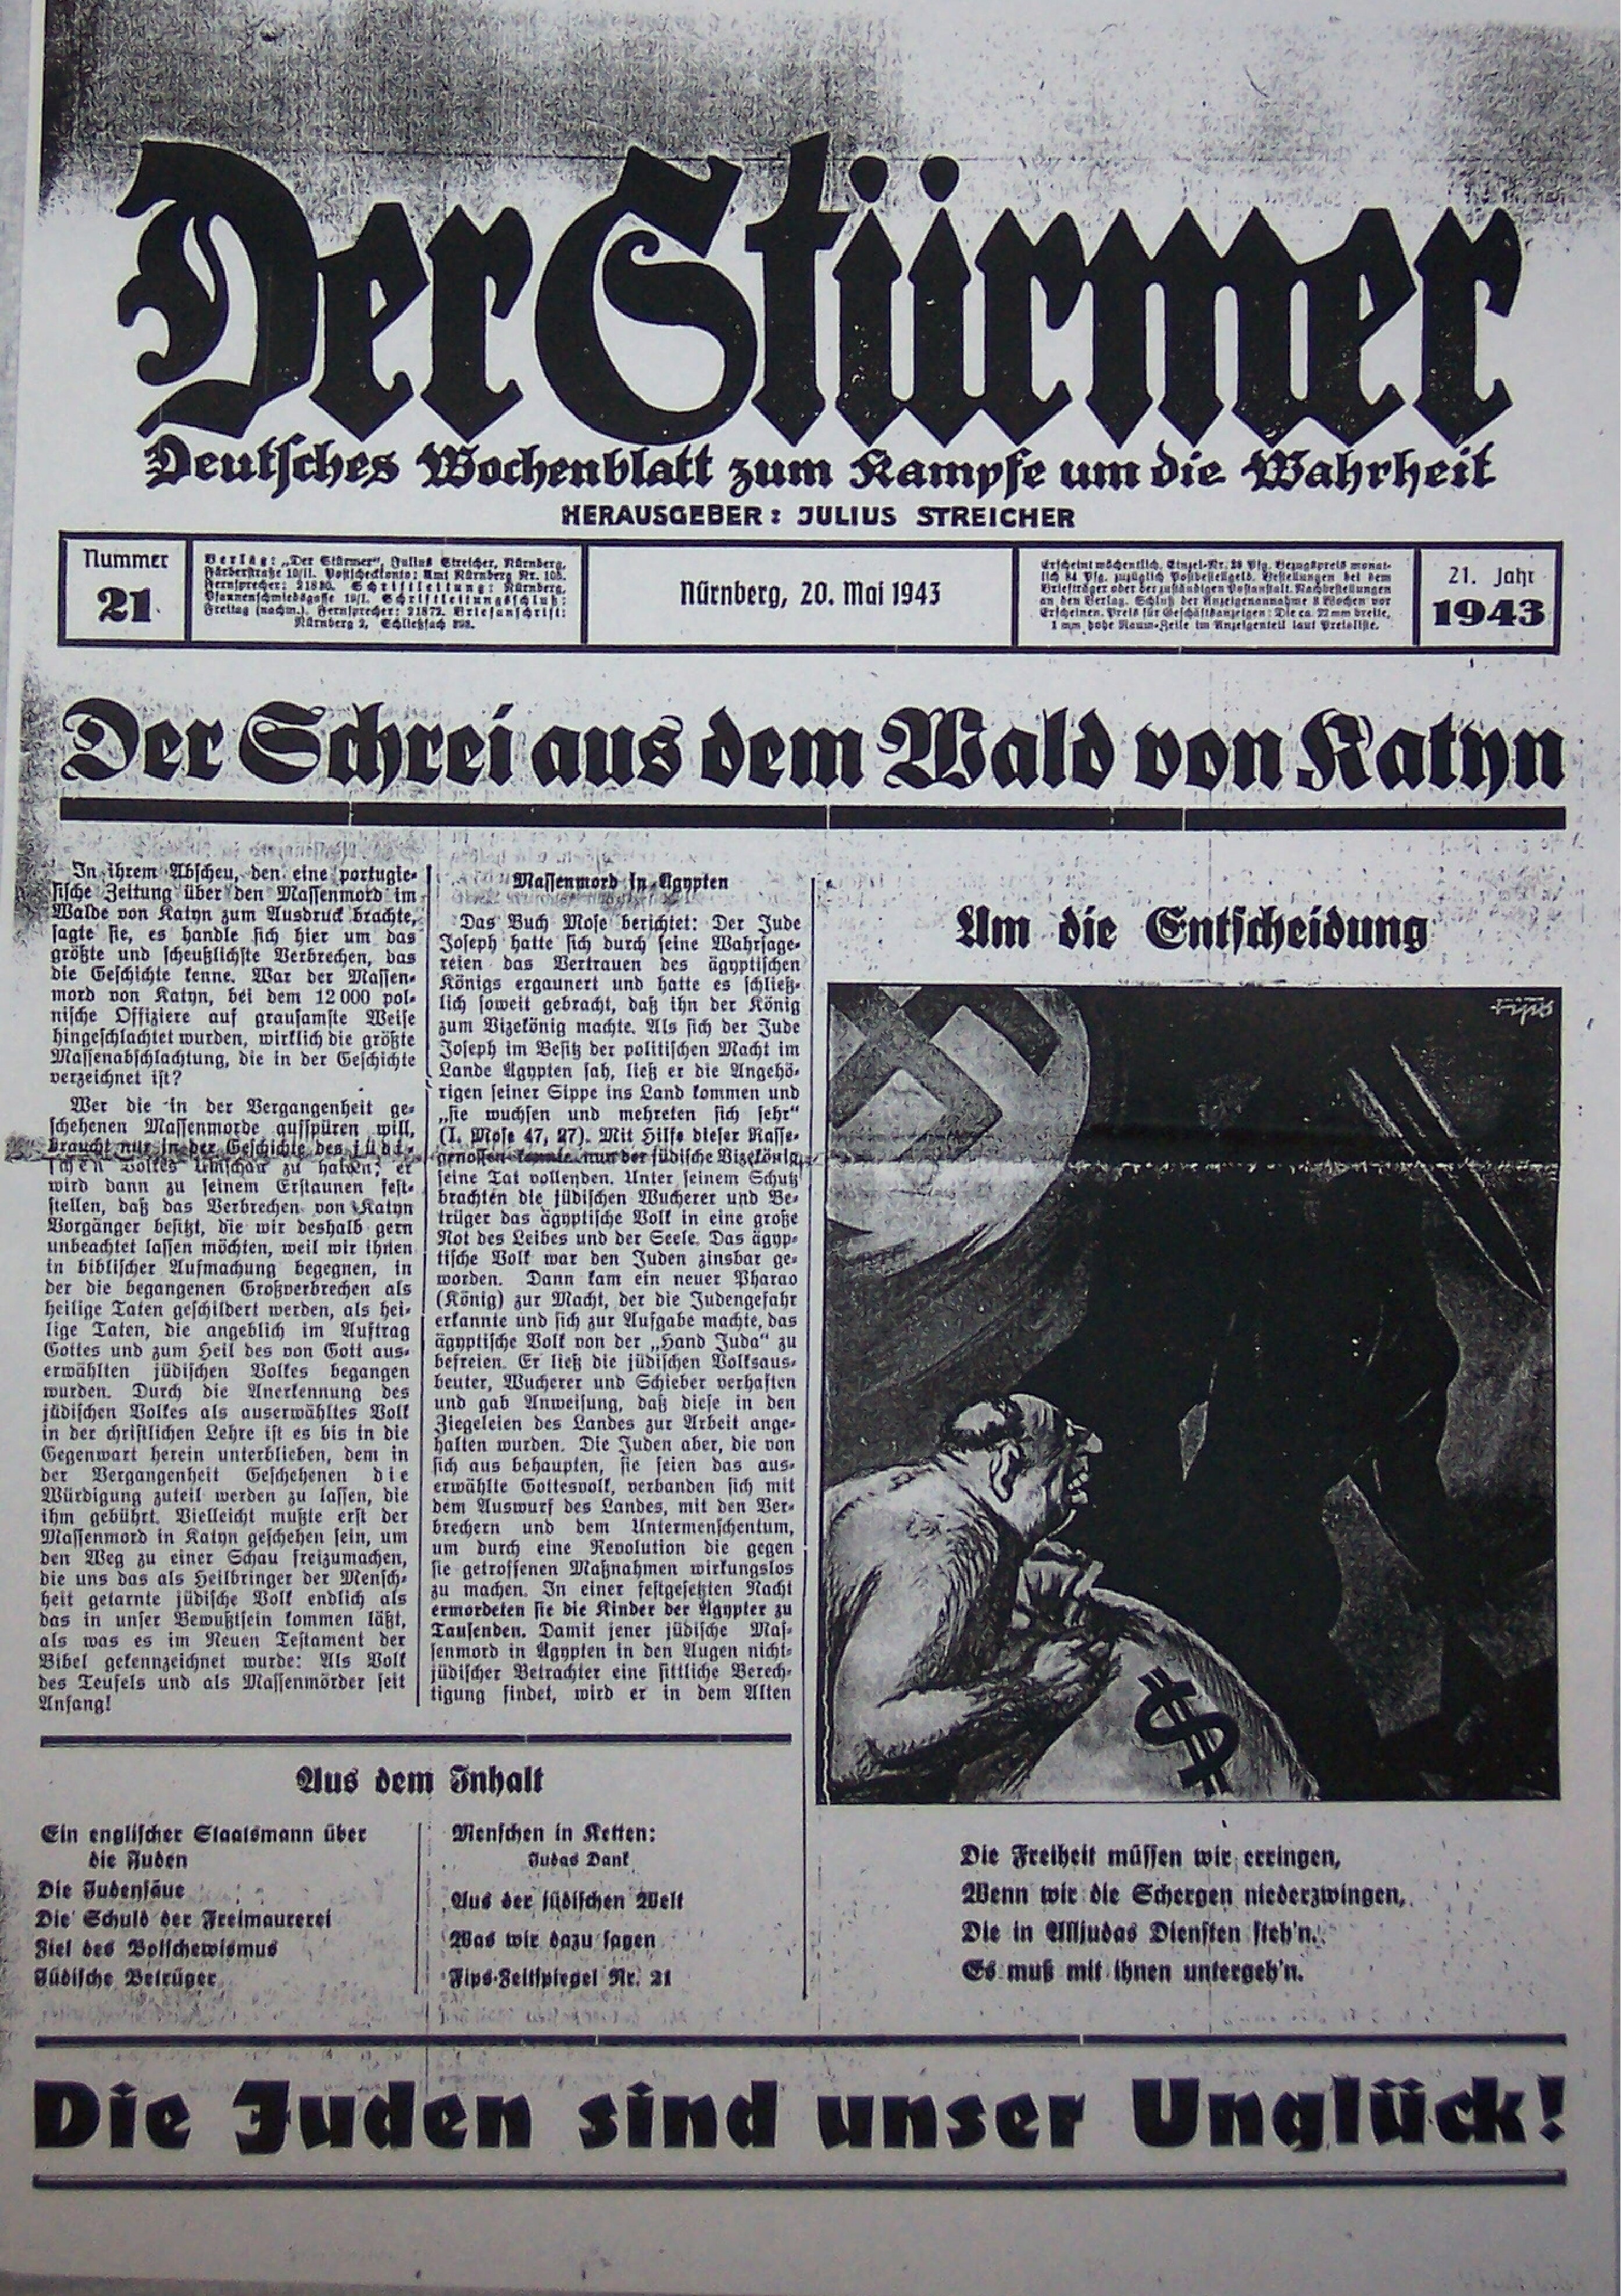 Der Stürmer - 1943 Nr. 21 - Der Schrei aus dem Wald von Katyn